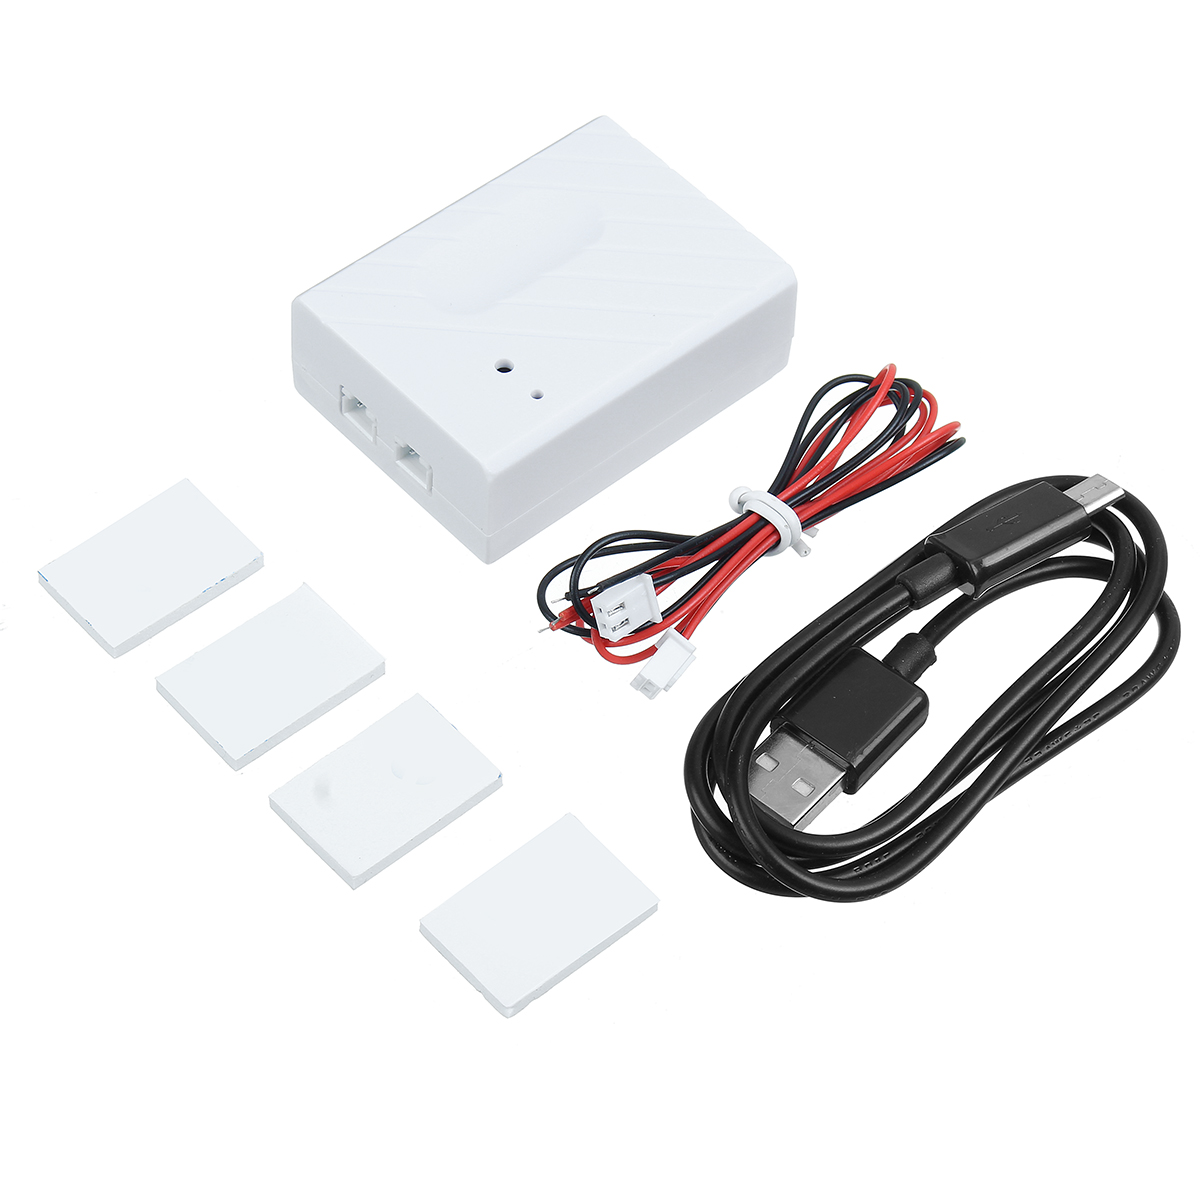 

Smart WiFi Switch Авто Устройство для открывания гаражных ворот Дистанционное Управление Для eWeLink APP Поддержка по те